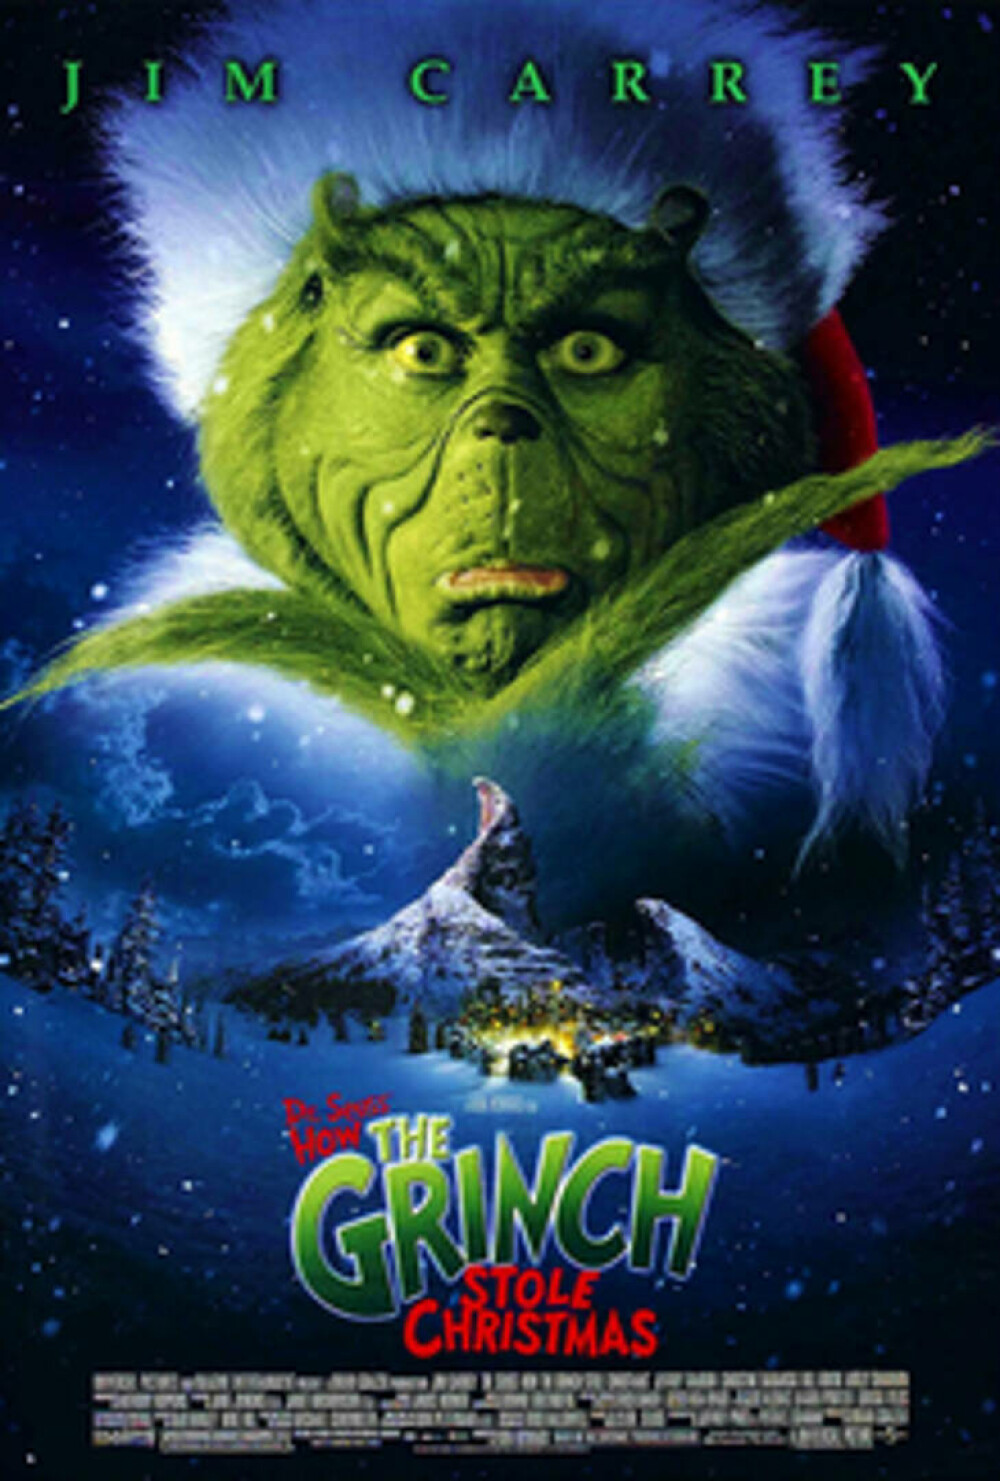 Cele mai proaste filme de Crăciun. La ce să nu te uiți în perioada sărbătorilor - Imaginea 1